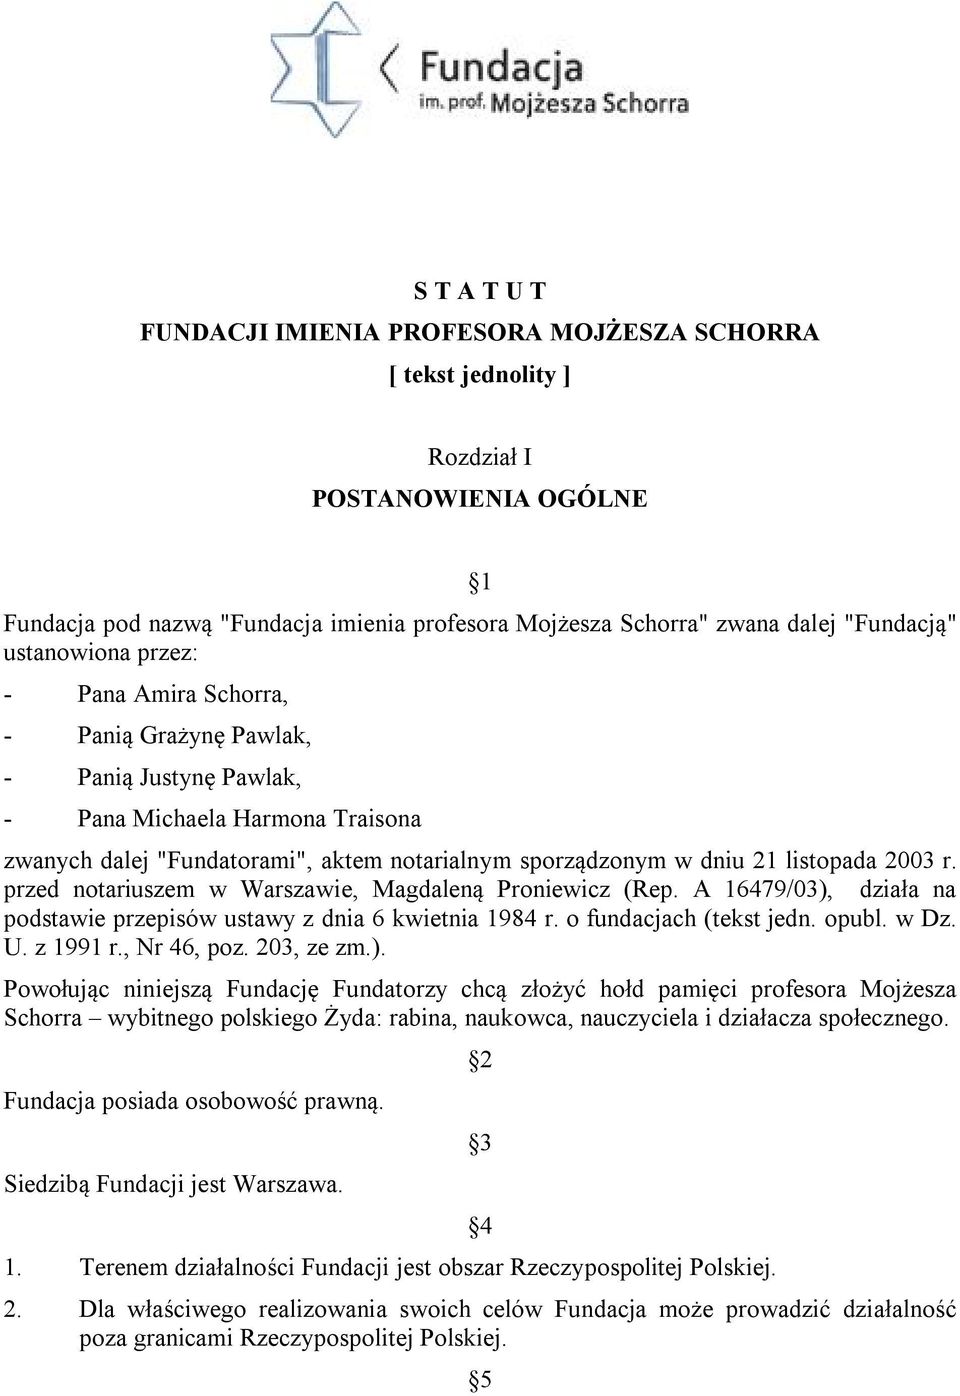 listopada 2003 r. przed notariuszem w Warszawie, Magdaleną Proniewicz (Rep. A 16479/03), działa na podstawie przepisów ustawy z dnia 6 kwietnia 1984 r. o fundacjach (tekst jedn. opubl. w Dz. U.